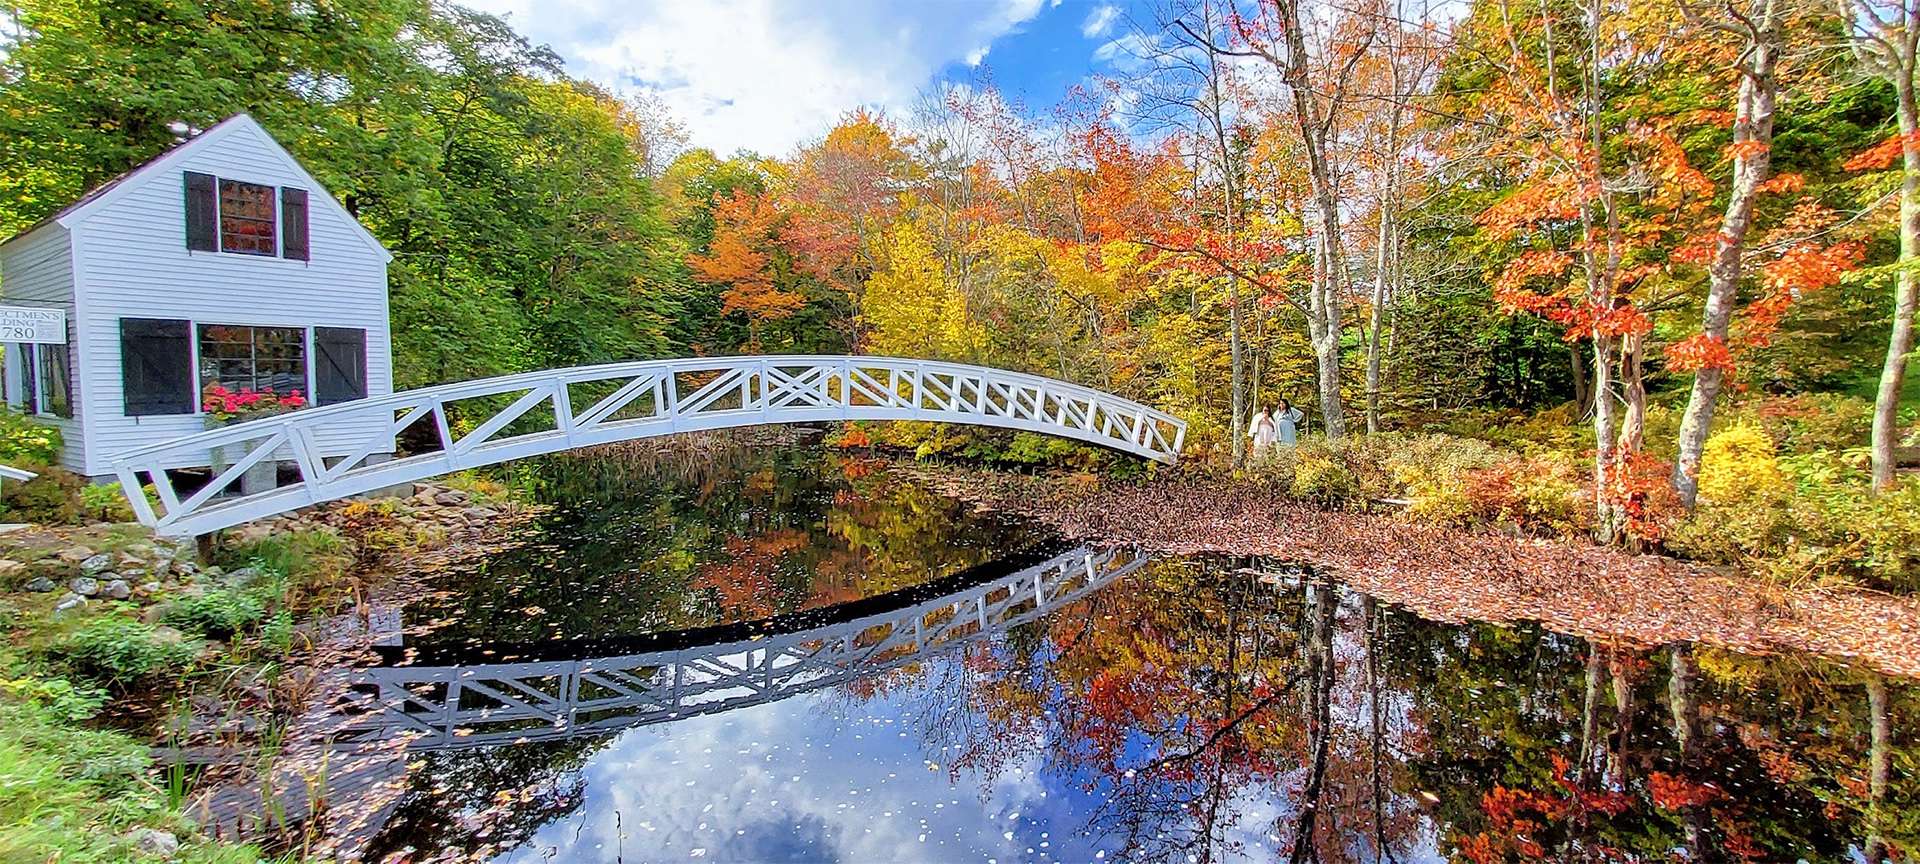 Maine, explorador costero, follaje de otoño, puente blanco y cabaña sobre un arroyo con árboles rojos, anaranjados y amarillos, zen pacífico 